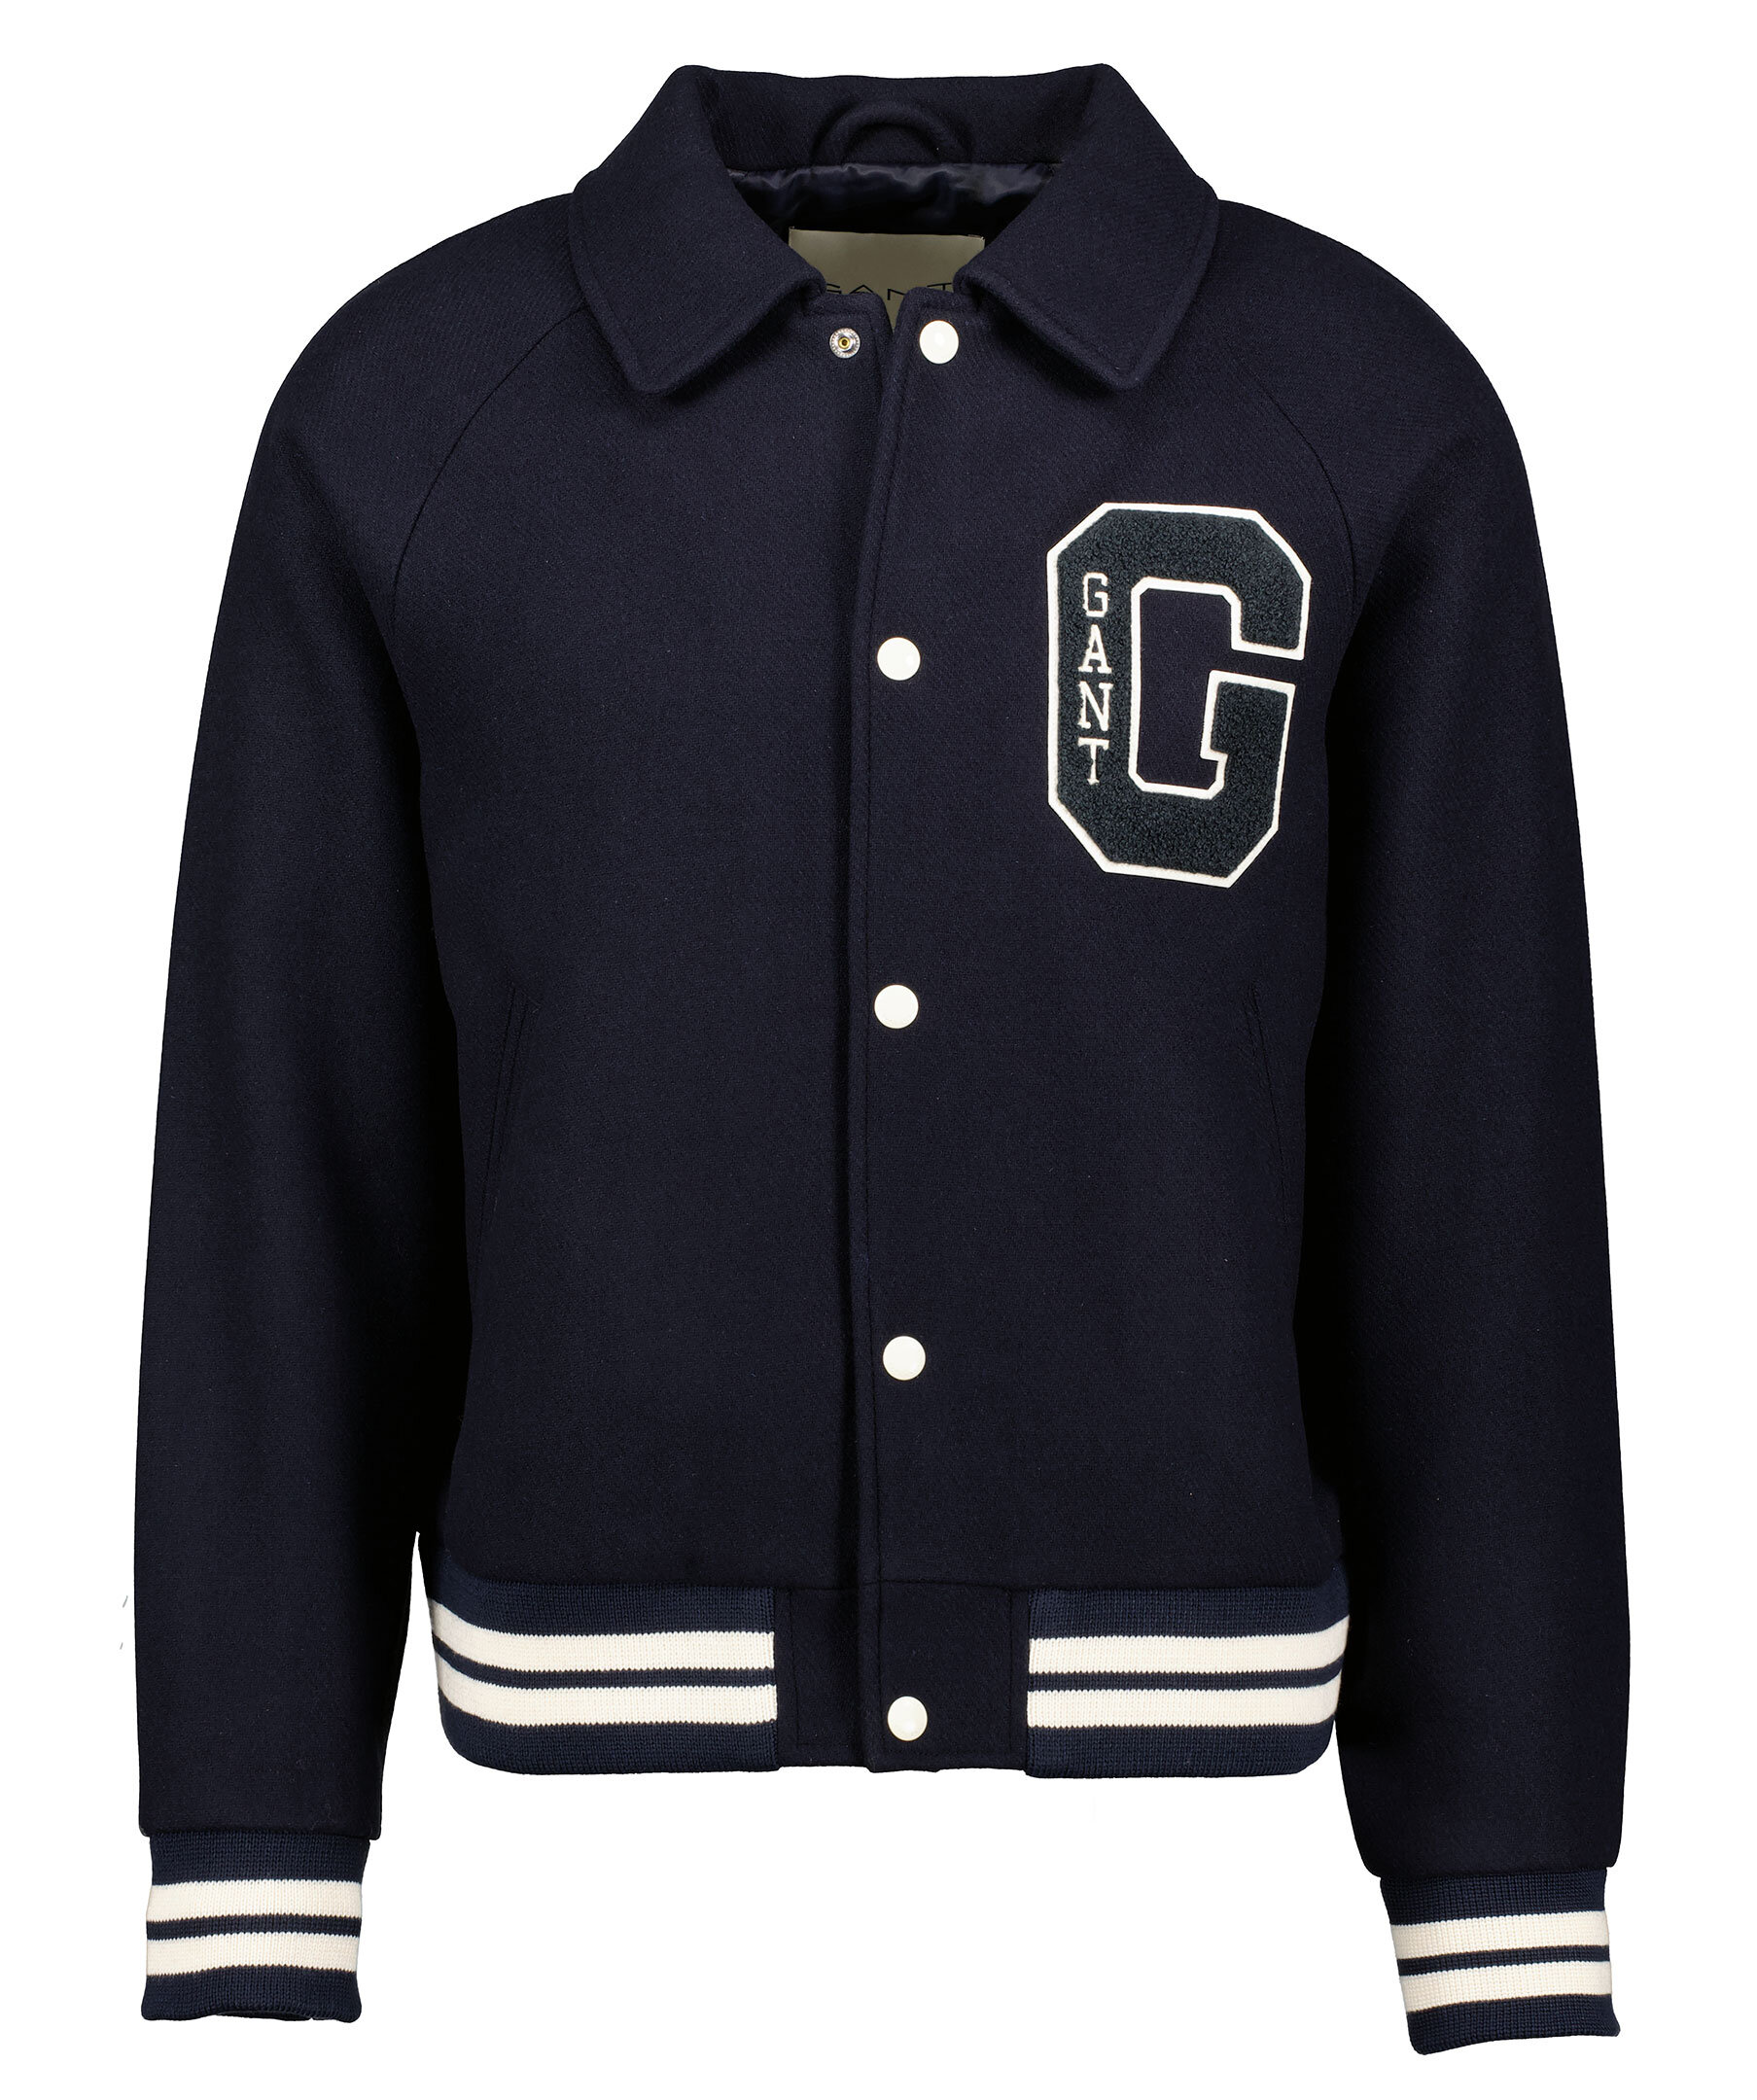 Handla Gant Wool Varsity Jacket, Navy hos Johnells.se | 7006392-433